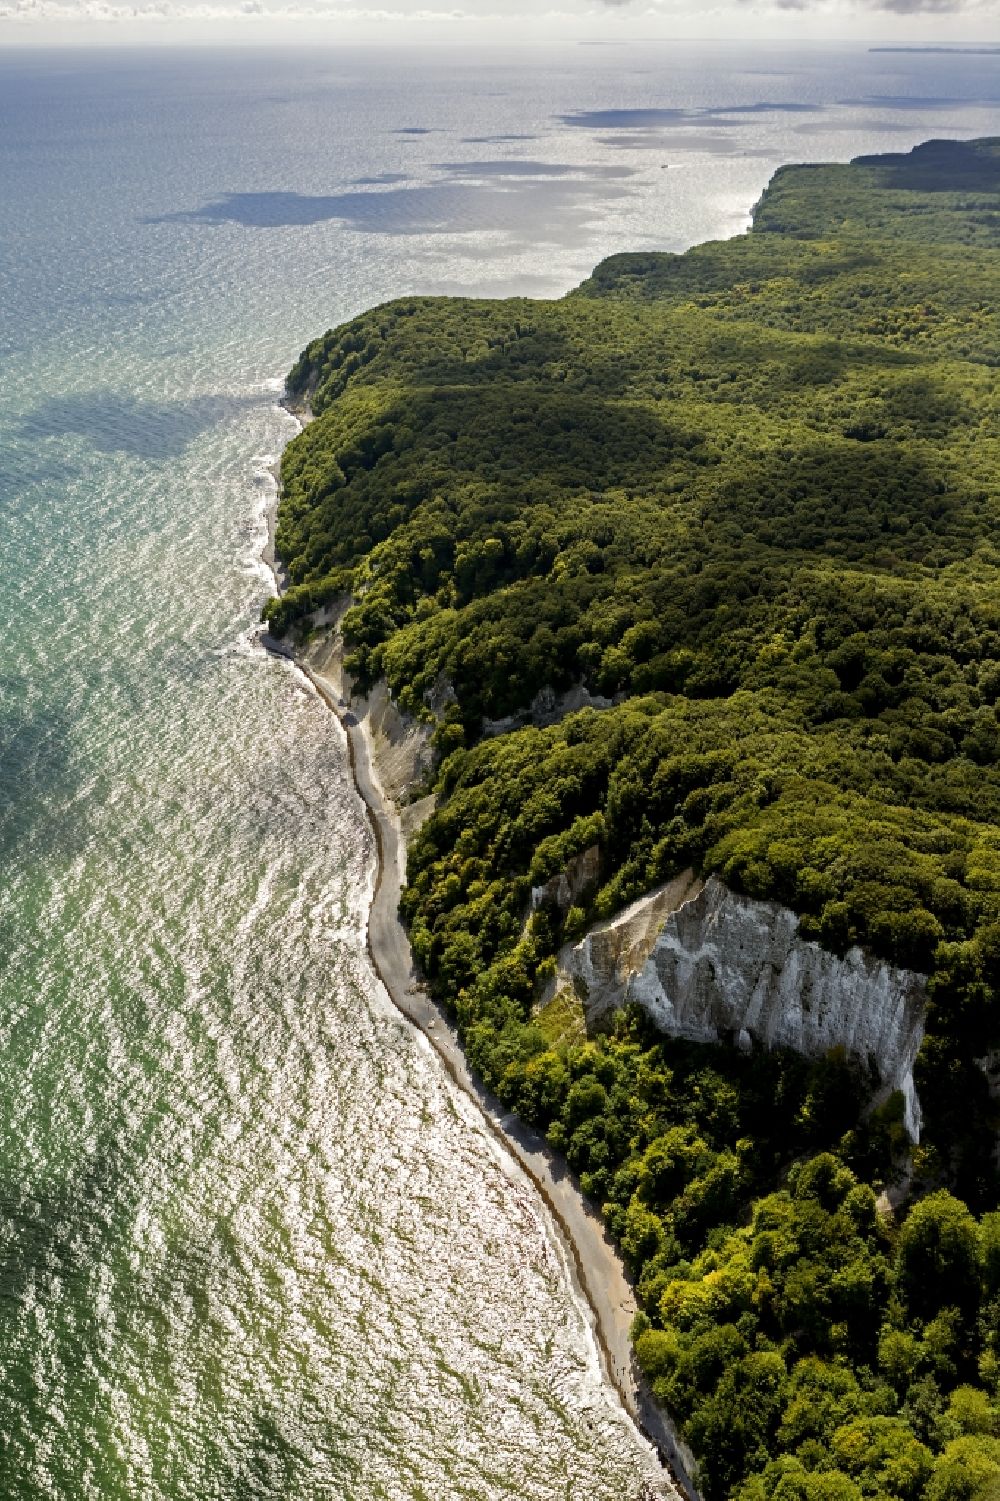 Luftbild Sassnitz - Kreideküste im Nationalpark Jasmund bei Sassnitz auf der Insel Rügen in Mecklenburg-Vorpommern